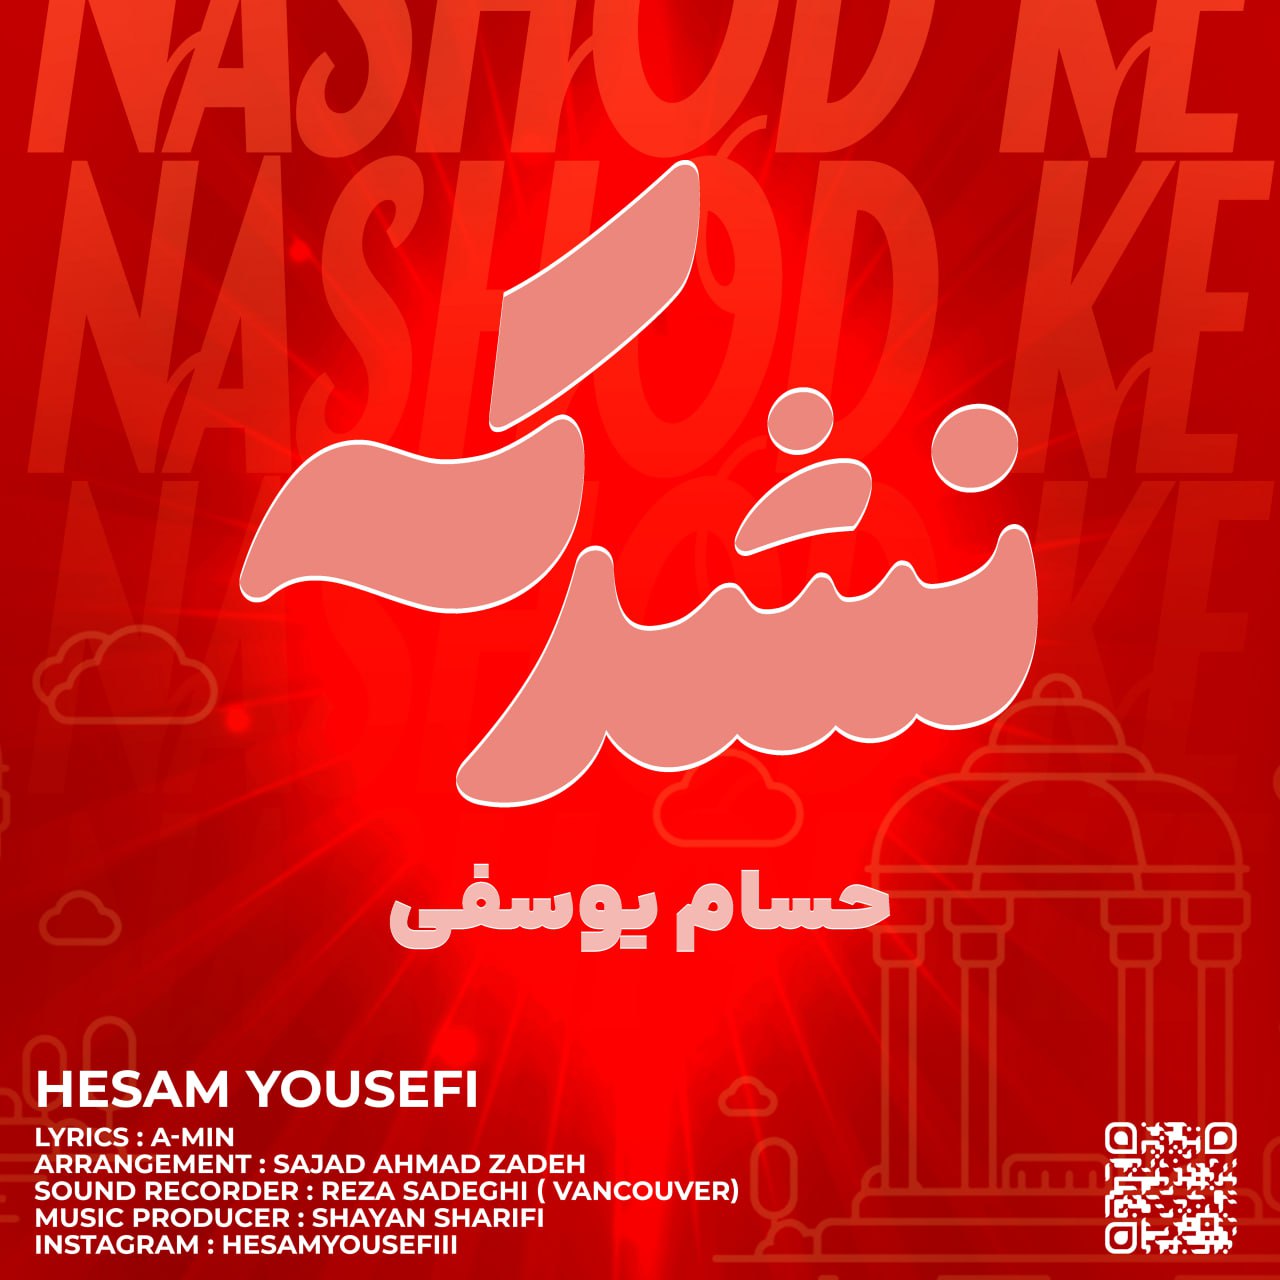 Hesam Yousefi – Nashod Ke